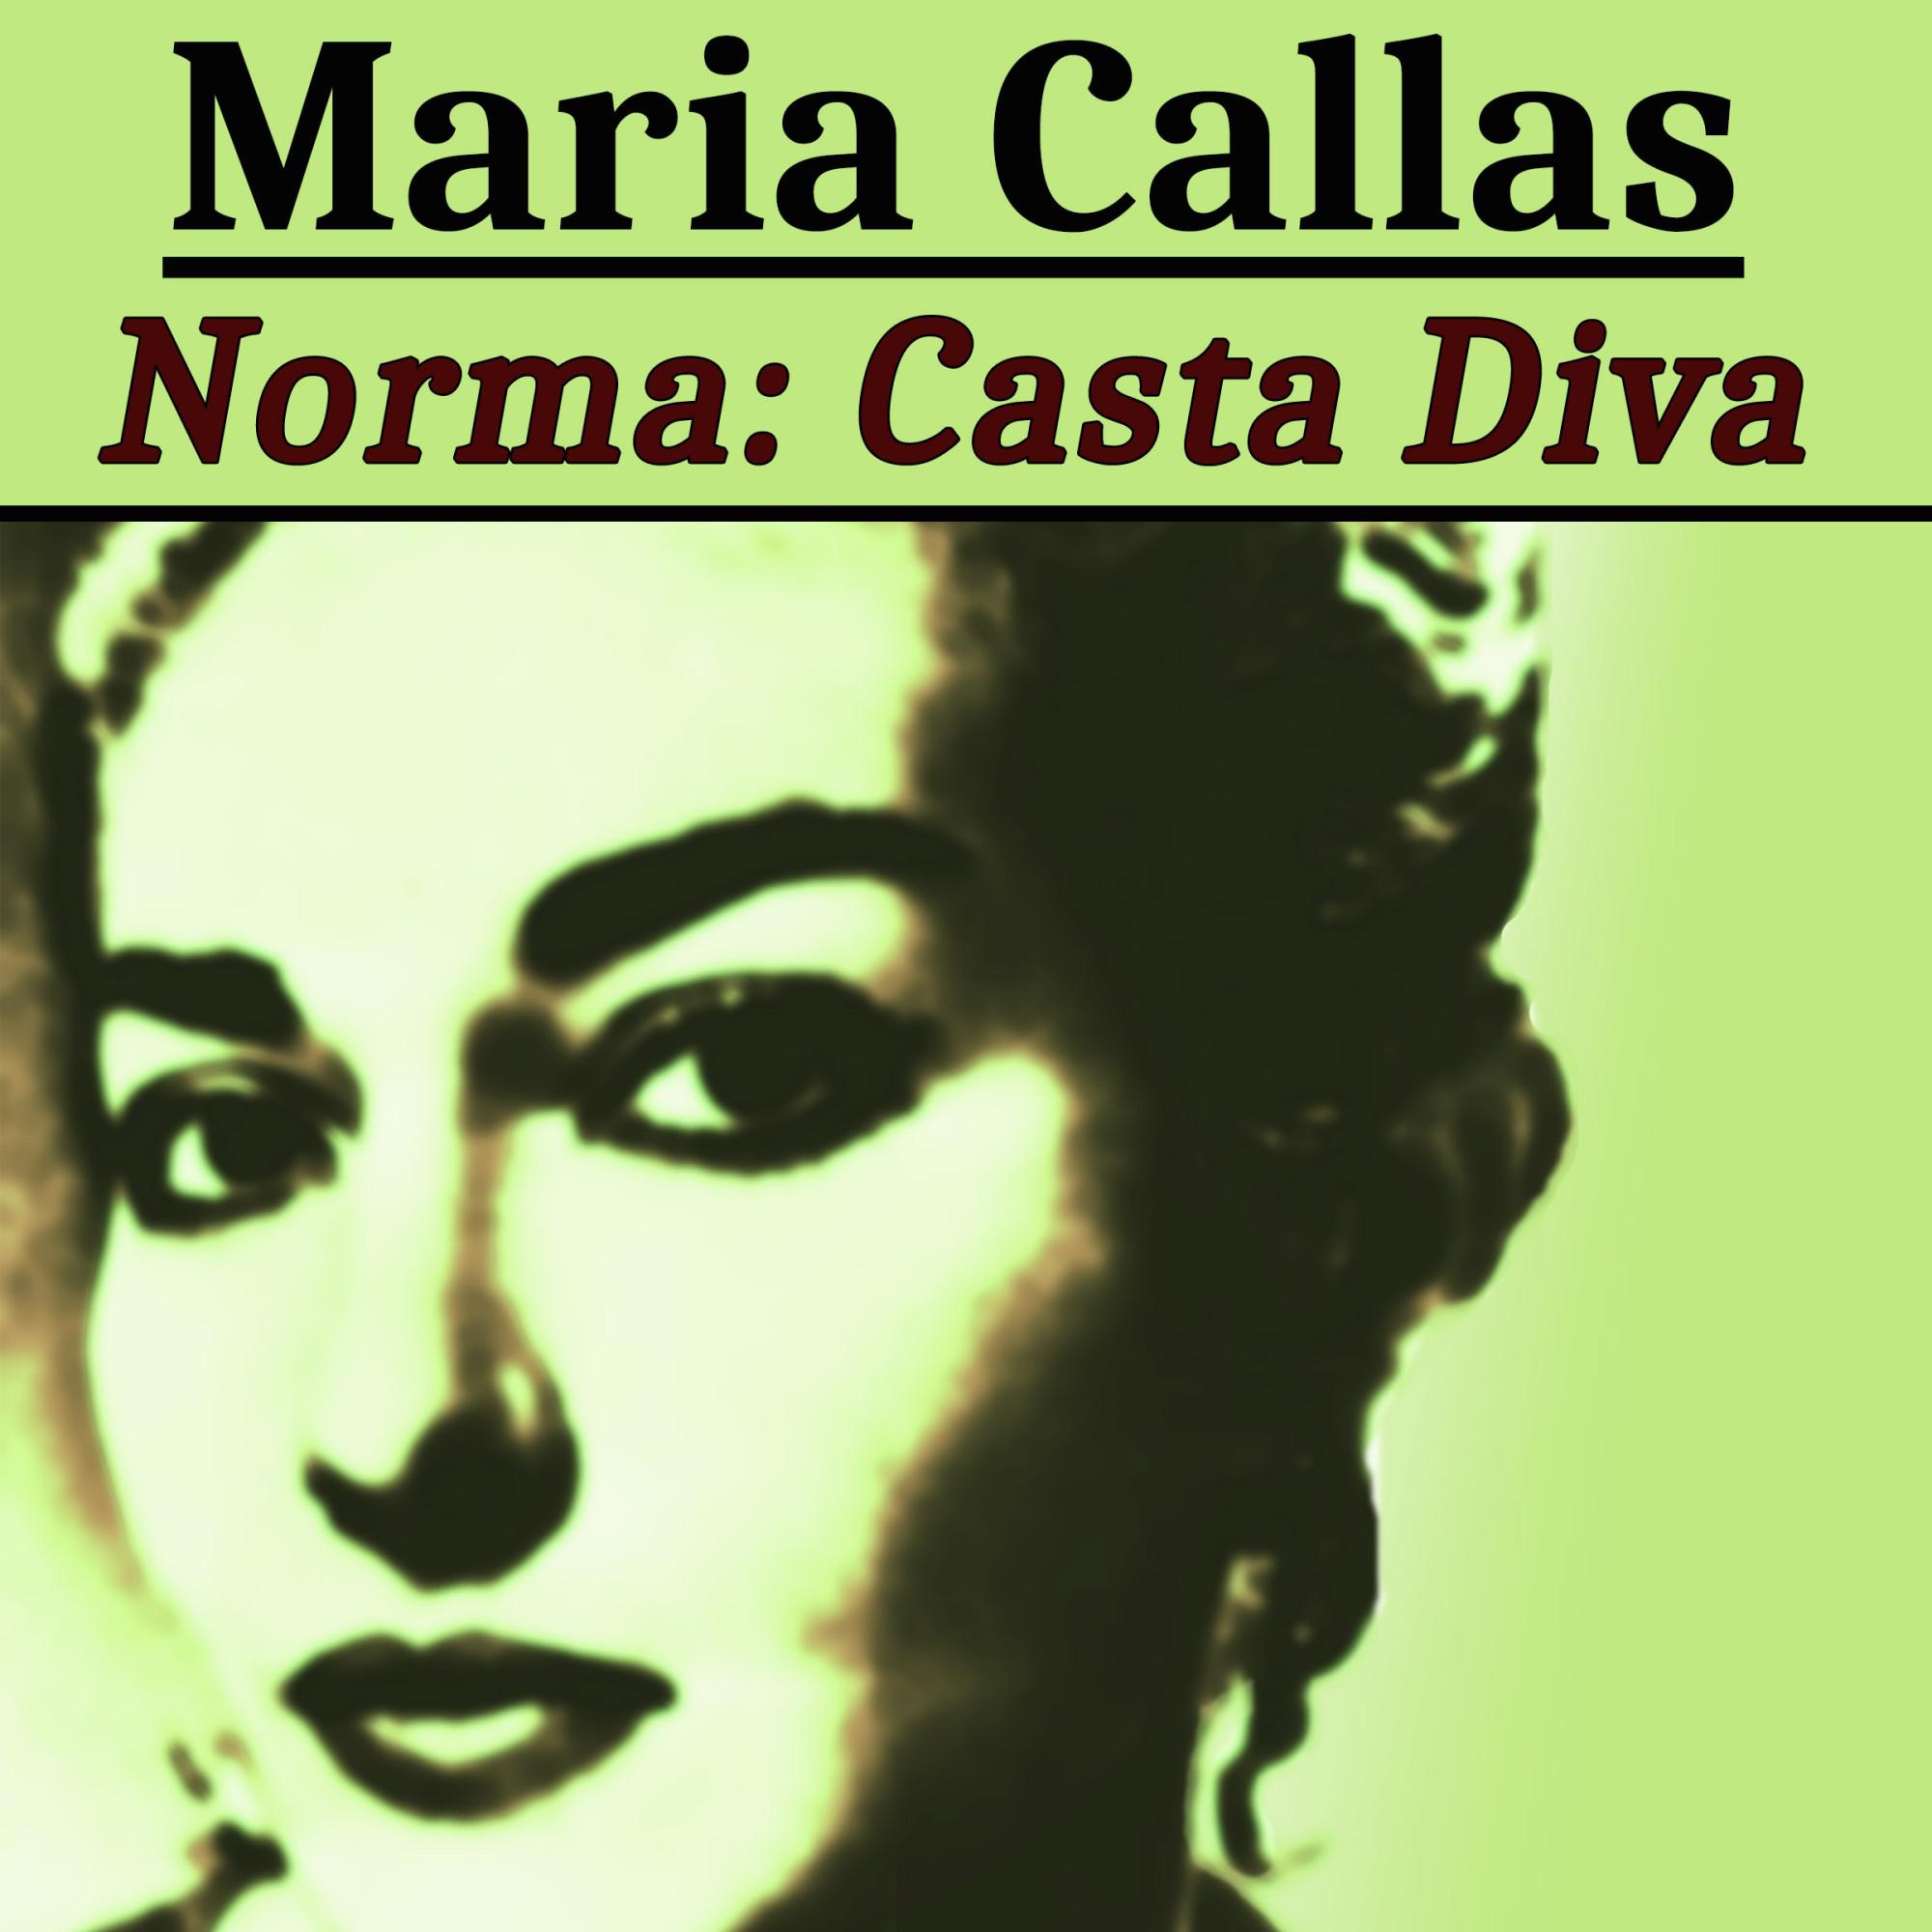 Norma: Casta Diva